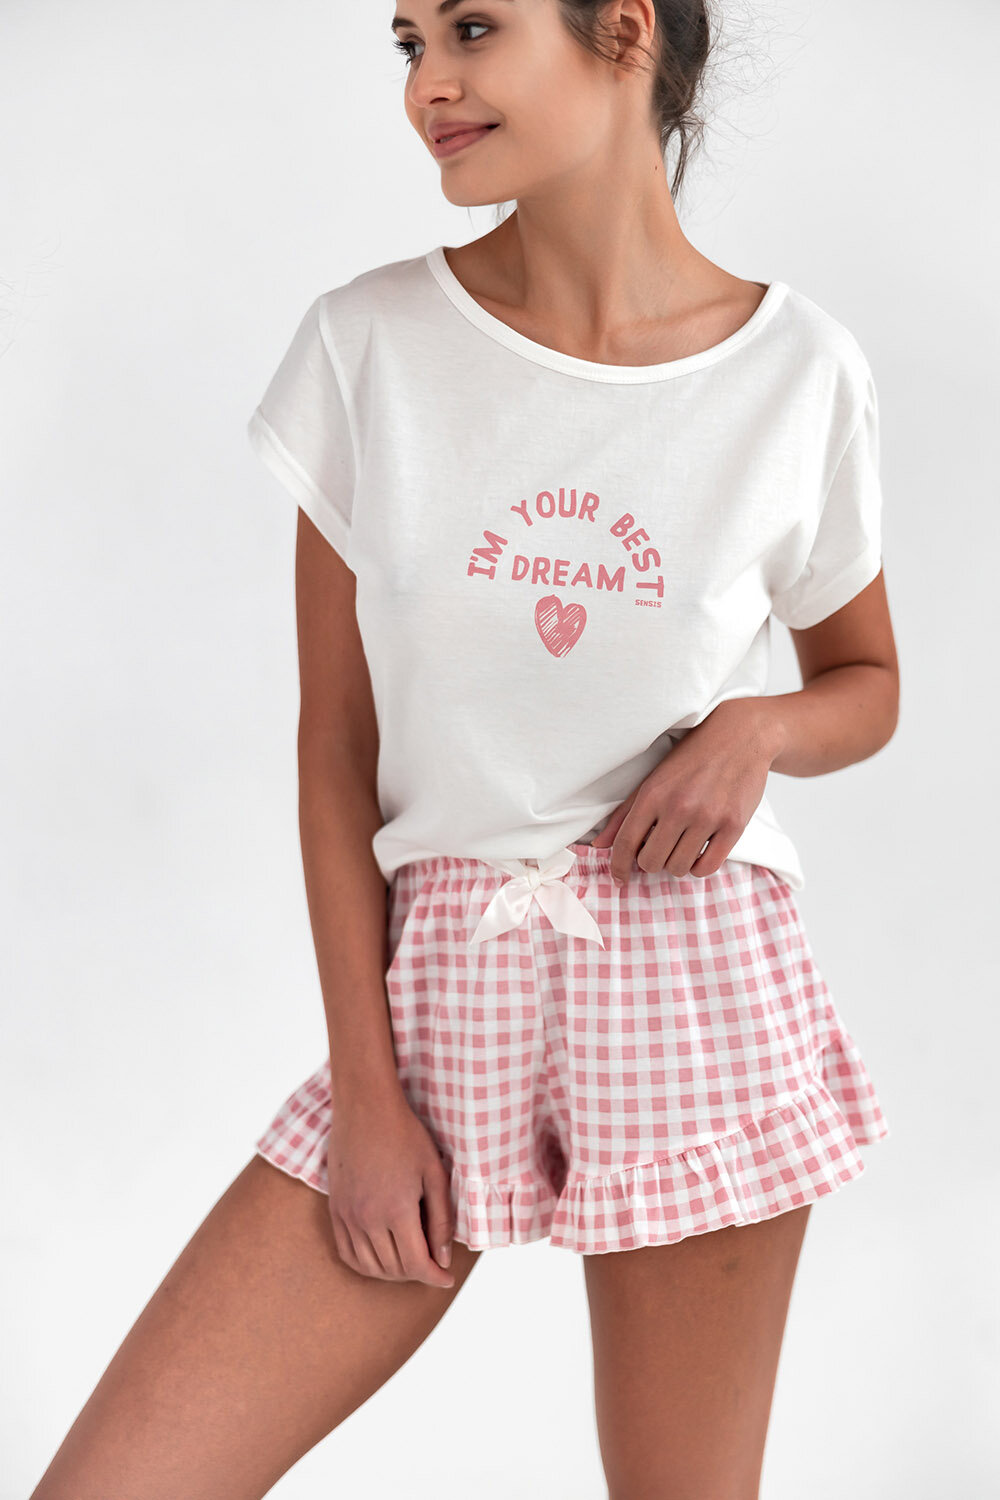 Пижама женская SENSIS Keyla, футболка и шорты, хлопок 100%, белый (Размер: XL)